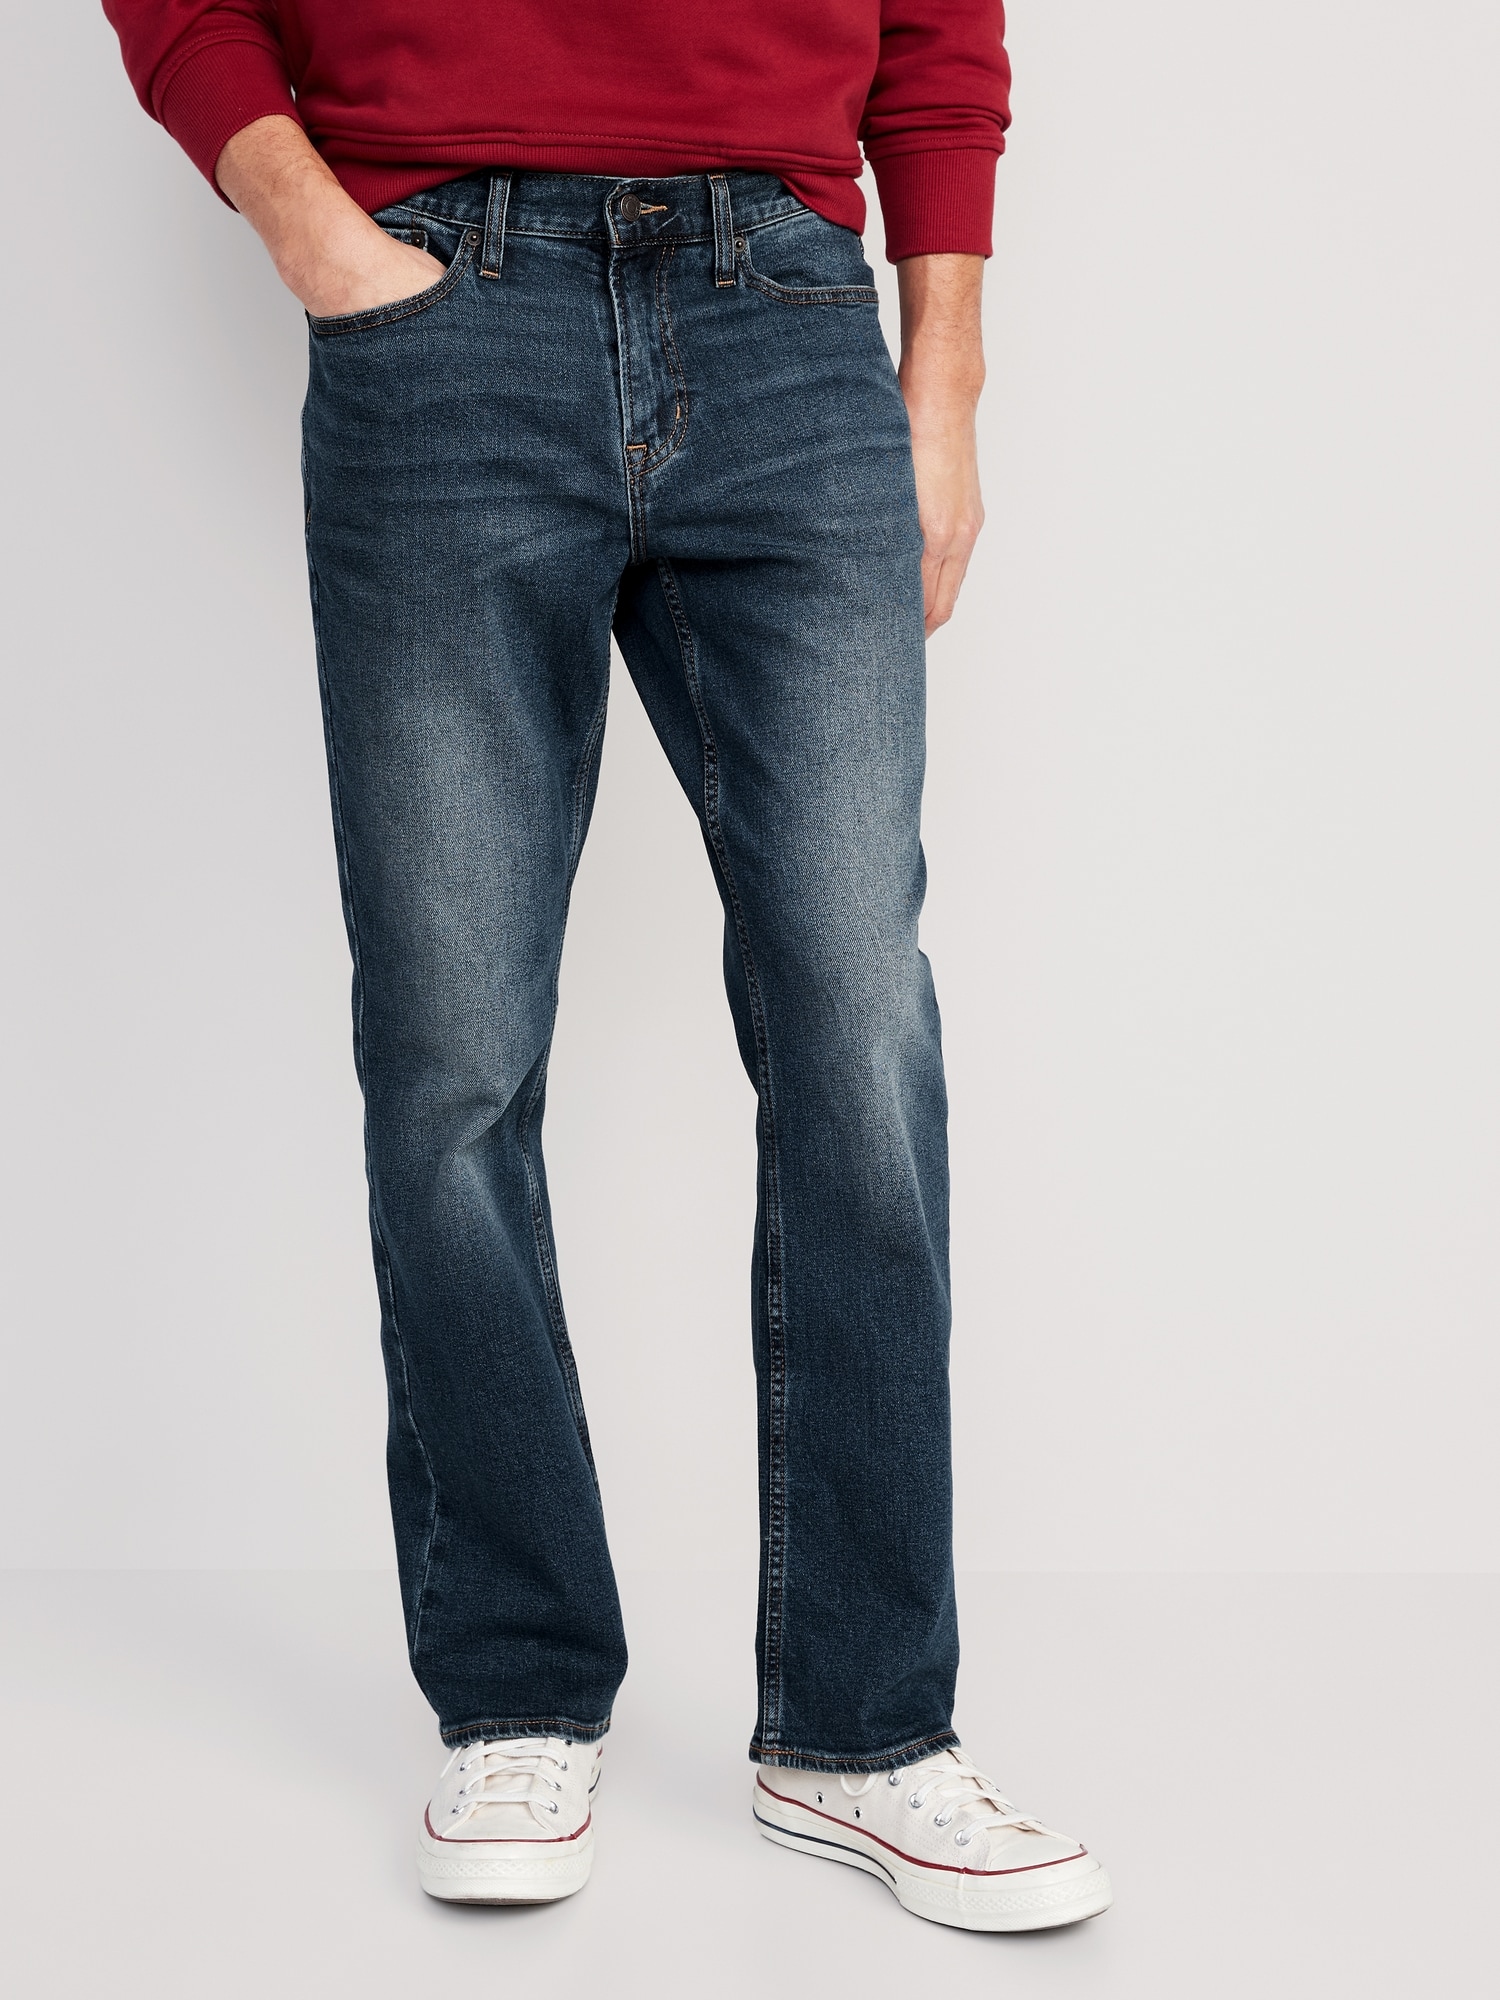 kapital I klæde sig ud Boot-Cut Built-In Flex Jeans for Men | Old Navy